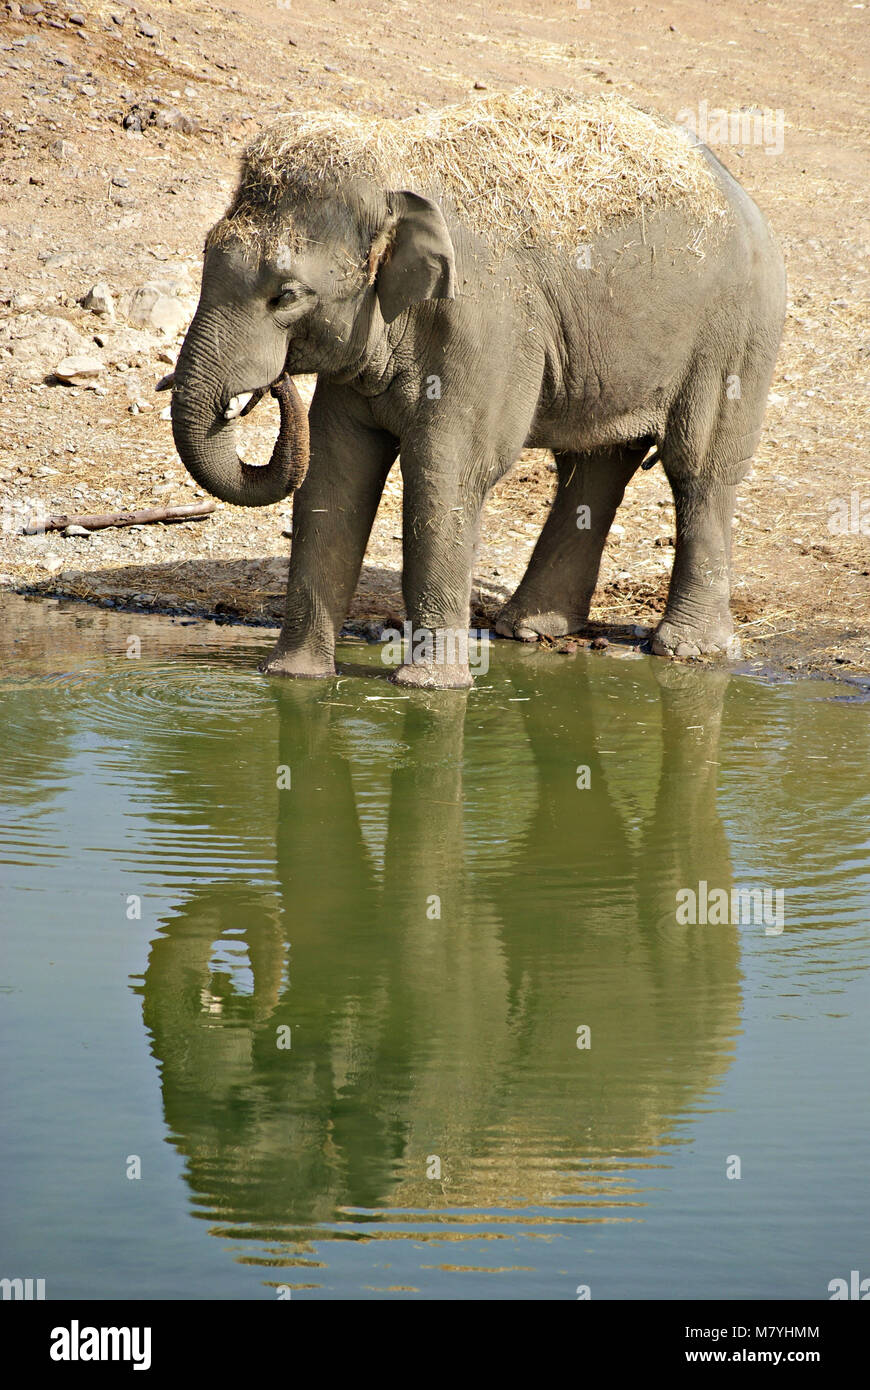 L'eau potable l'éléphant femelle asiatique reflétée dans un lac en été Banque D'Images